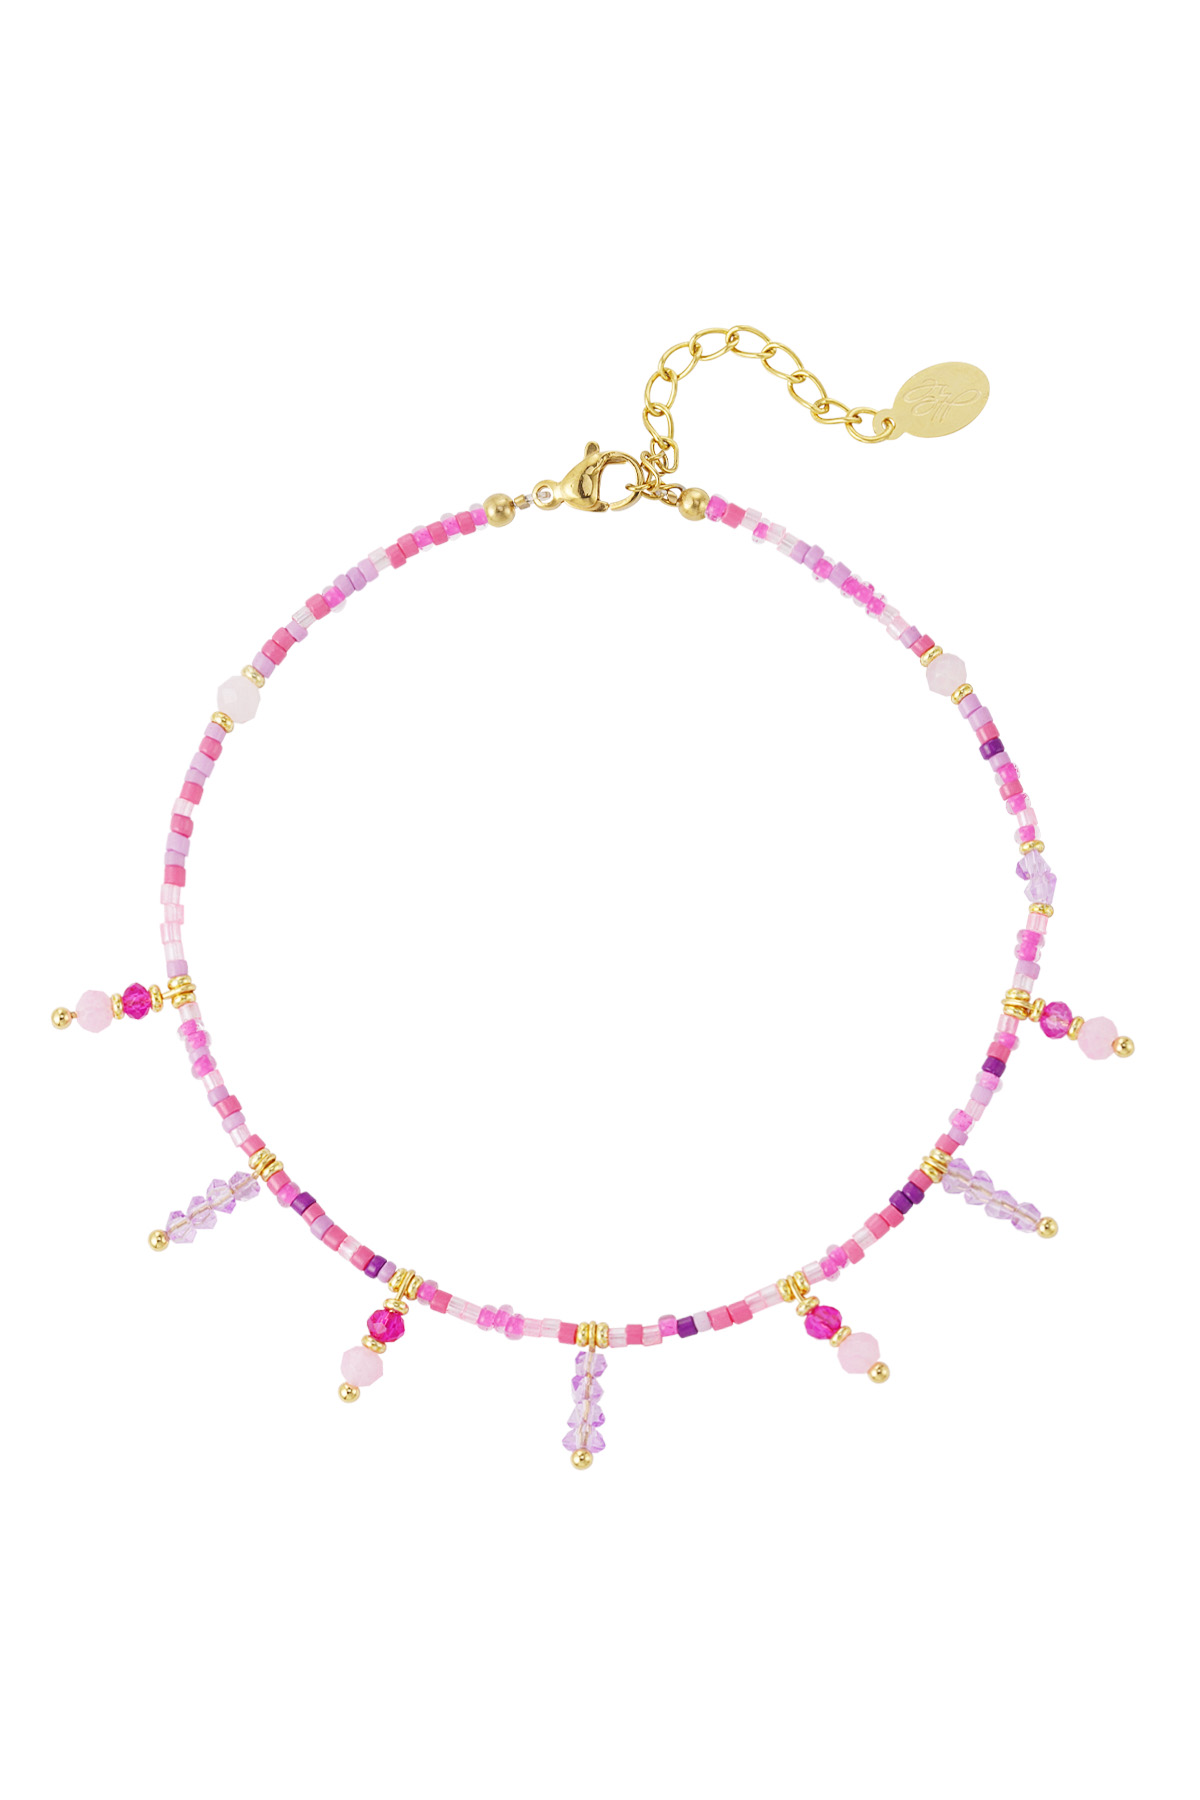 Kralen armband met kralen hangers- roze / goud 